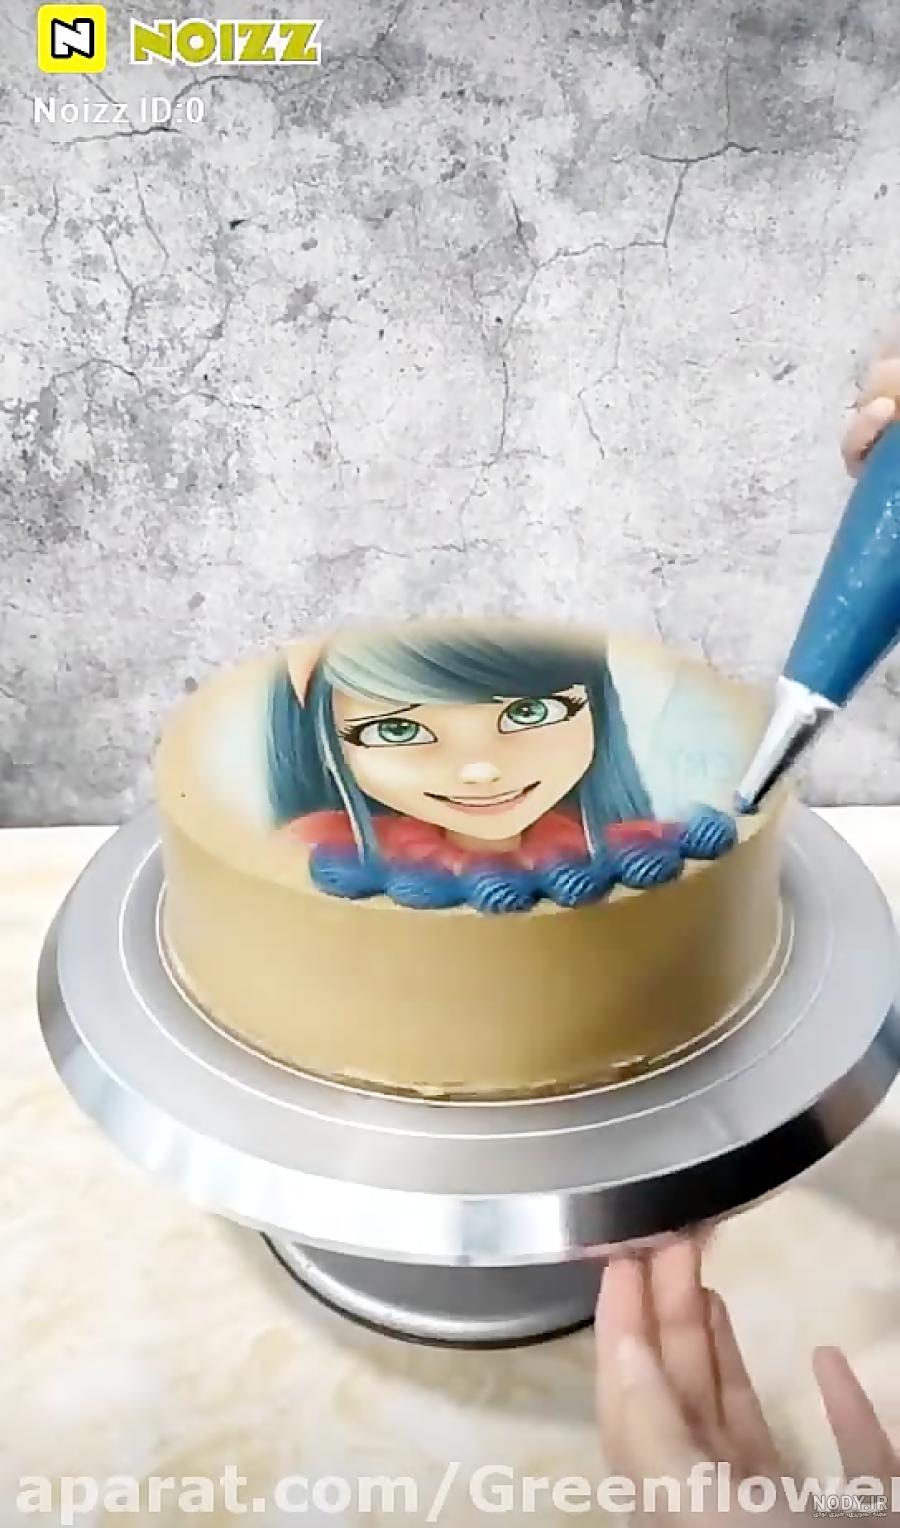 عکس دختر کفشدوزکی برای روی کیک